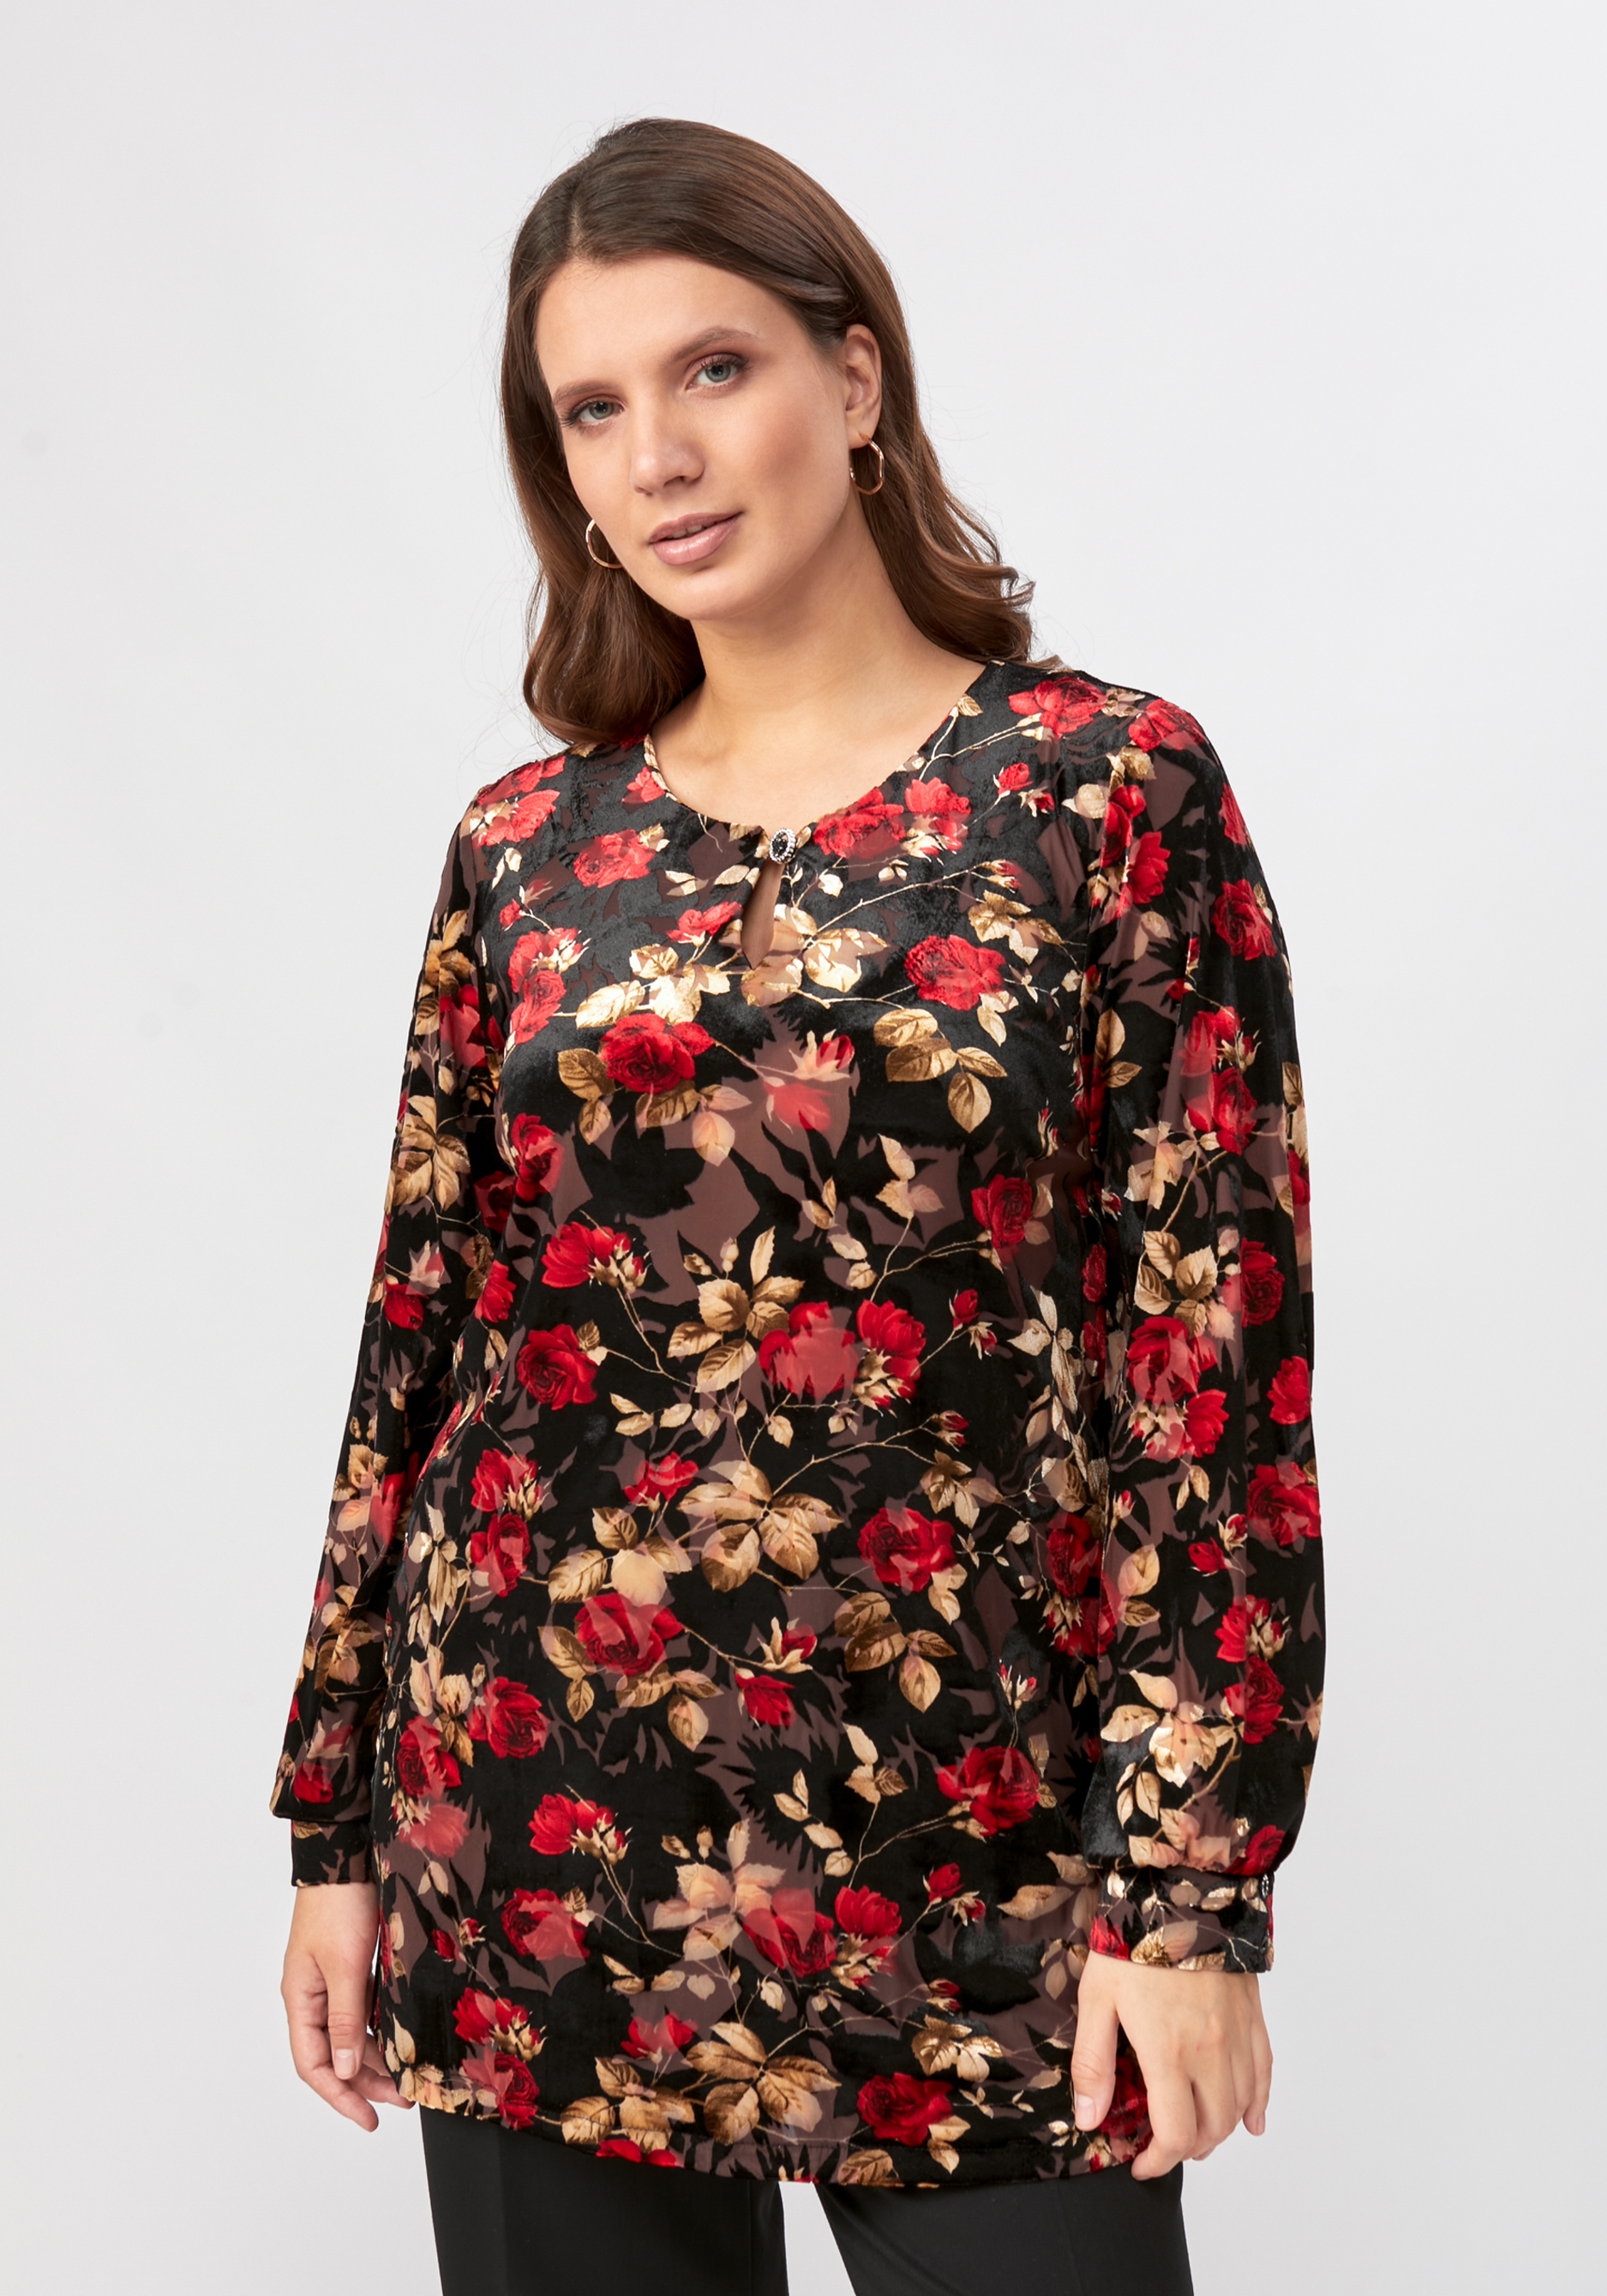 Блуза с бархатным принтом блузка из шитья с цветочным принтом